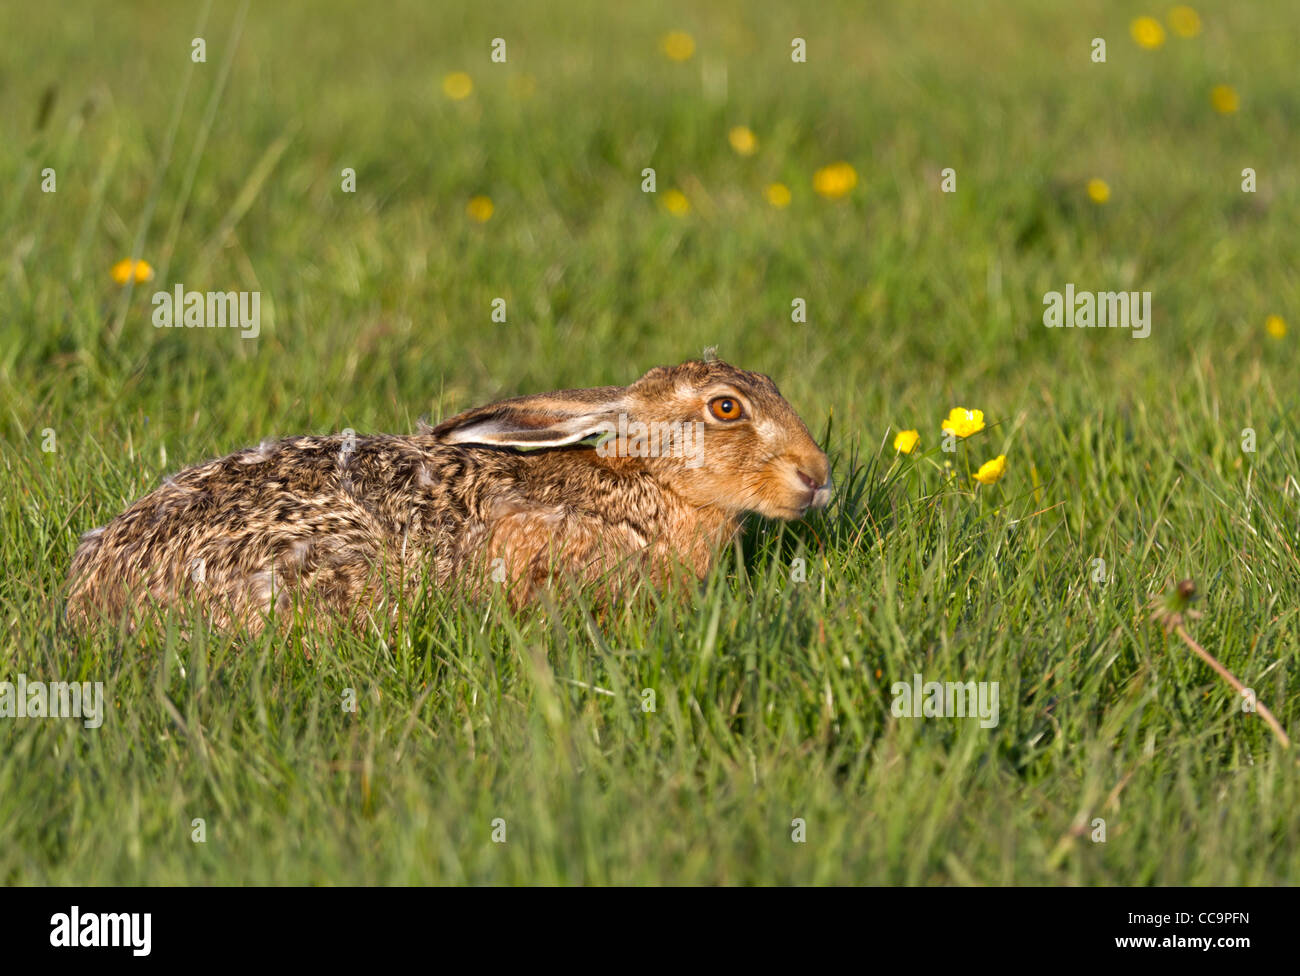 European Hare (Lepus europaeus) Stock Photo